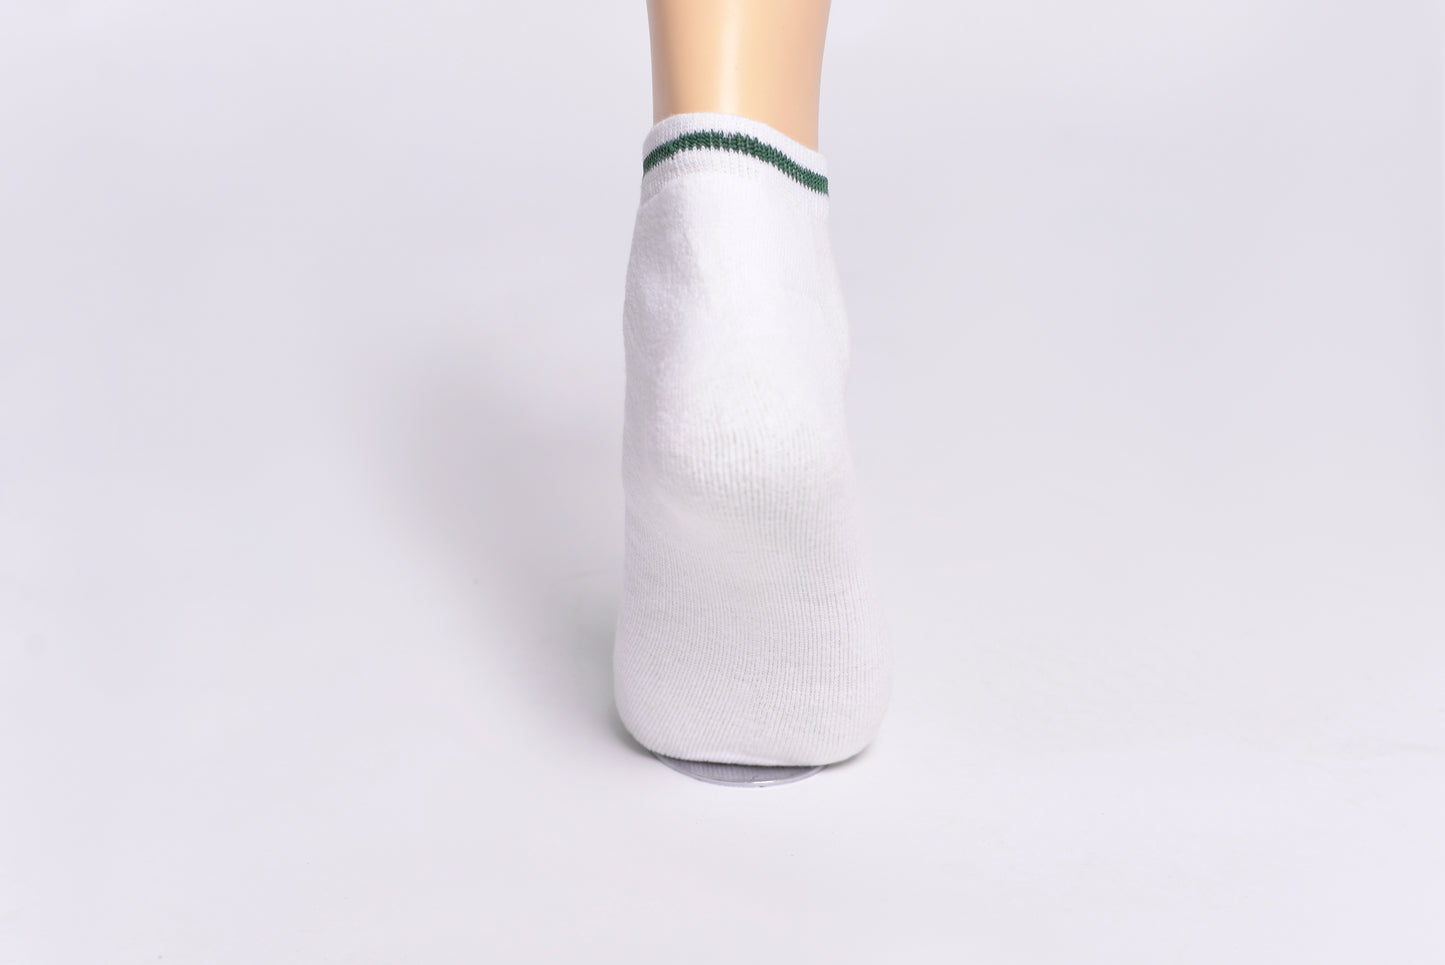 MLS - Men’s Low Cut Sneakers Socks Foot Emb White (Pack of 2) (MLSBLCSA24)